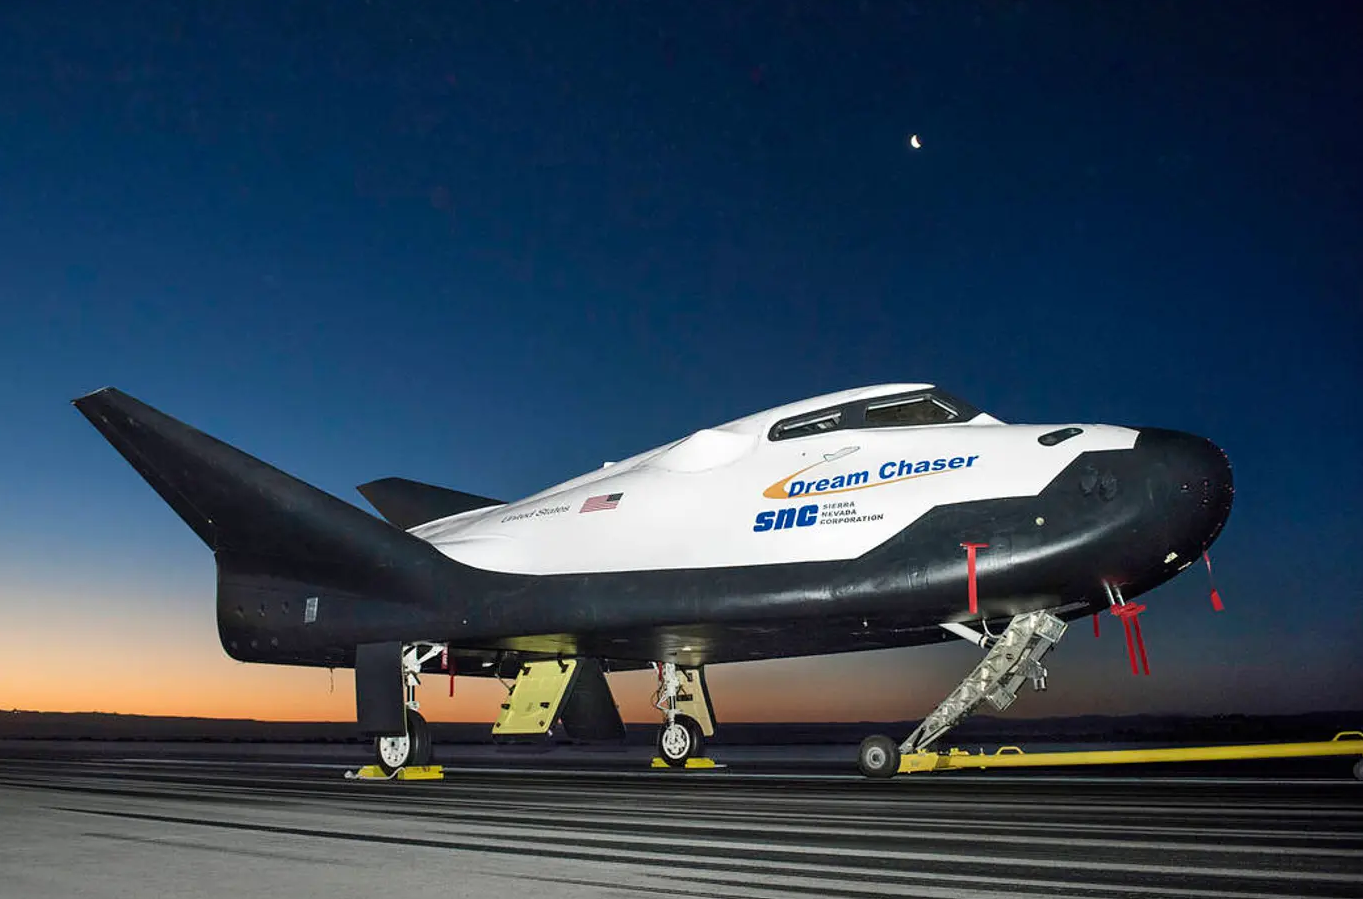 عرض مركبة الفضاء" دريم تشيسر" التابعة لشركة "سييرا نيفادا" على المدرج في "مركز أرمسترونغ لبحوث الطيران" التابع لـ"ناسا" في 2017 استعداداً لأحد الاختبارات